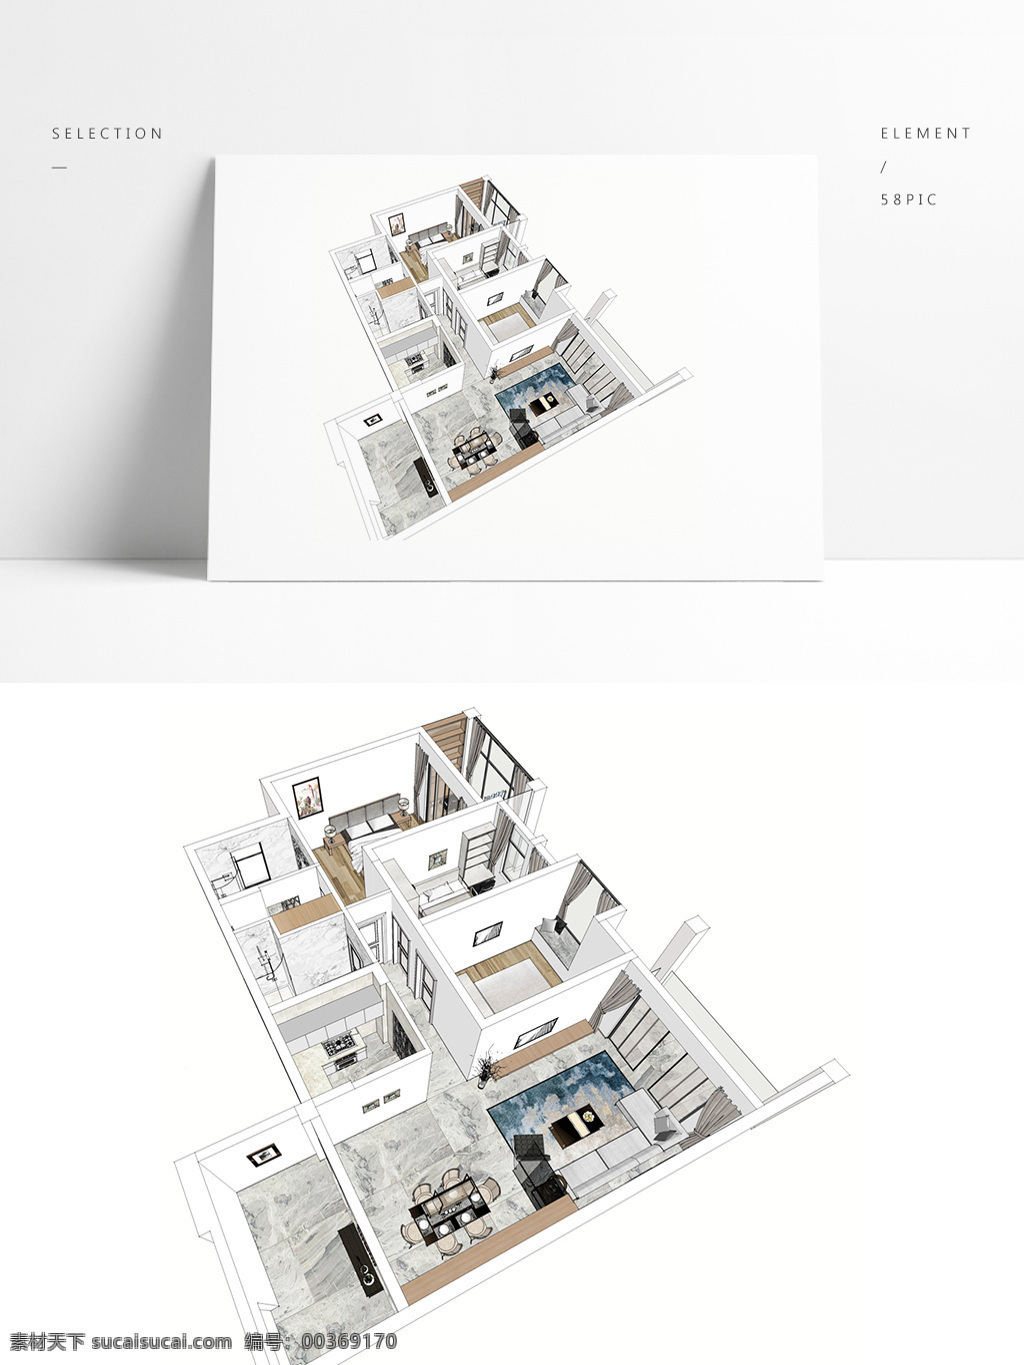 大平 层 户型 草图 大师 全景 模型 室内空间设计 住宅室内设计 样板房 透视 3d模型 su模型 草图大师模型 家具模型